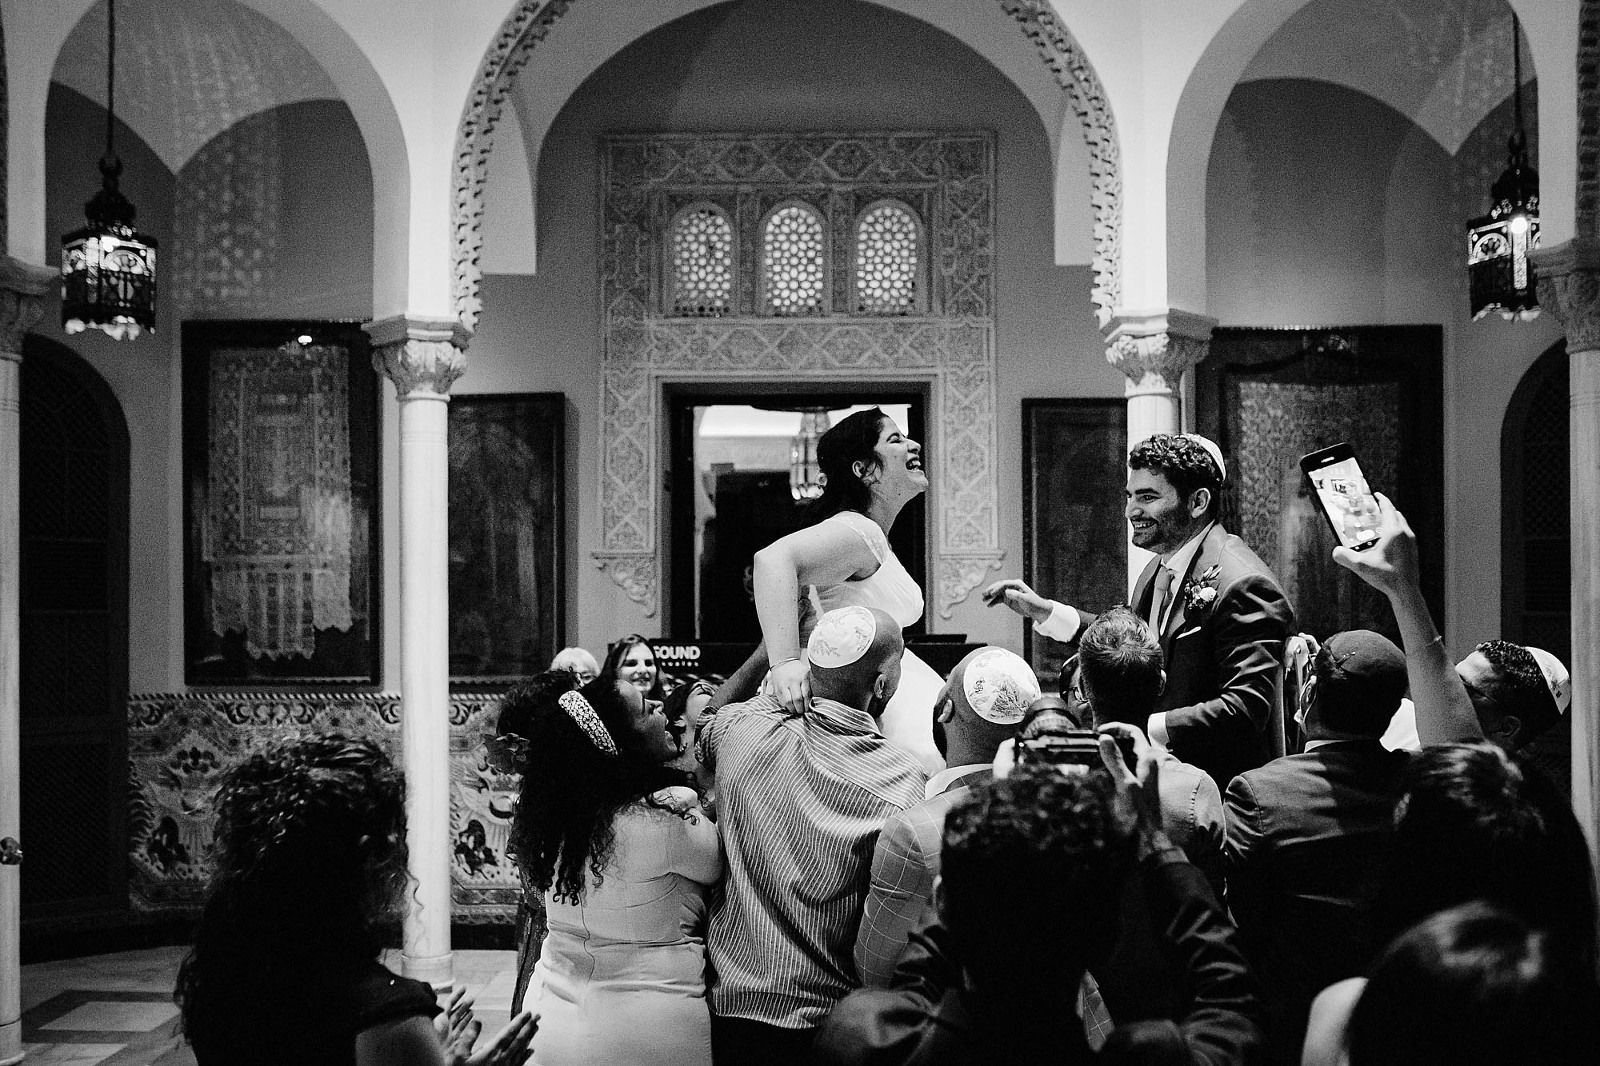 Fotografia de boda en Sevilla. Villa Luisa. Juan Luis Morilla. Wedding photography in Seville.